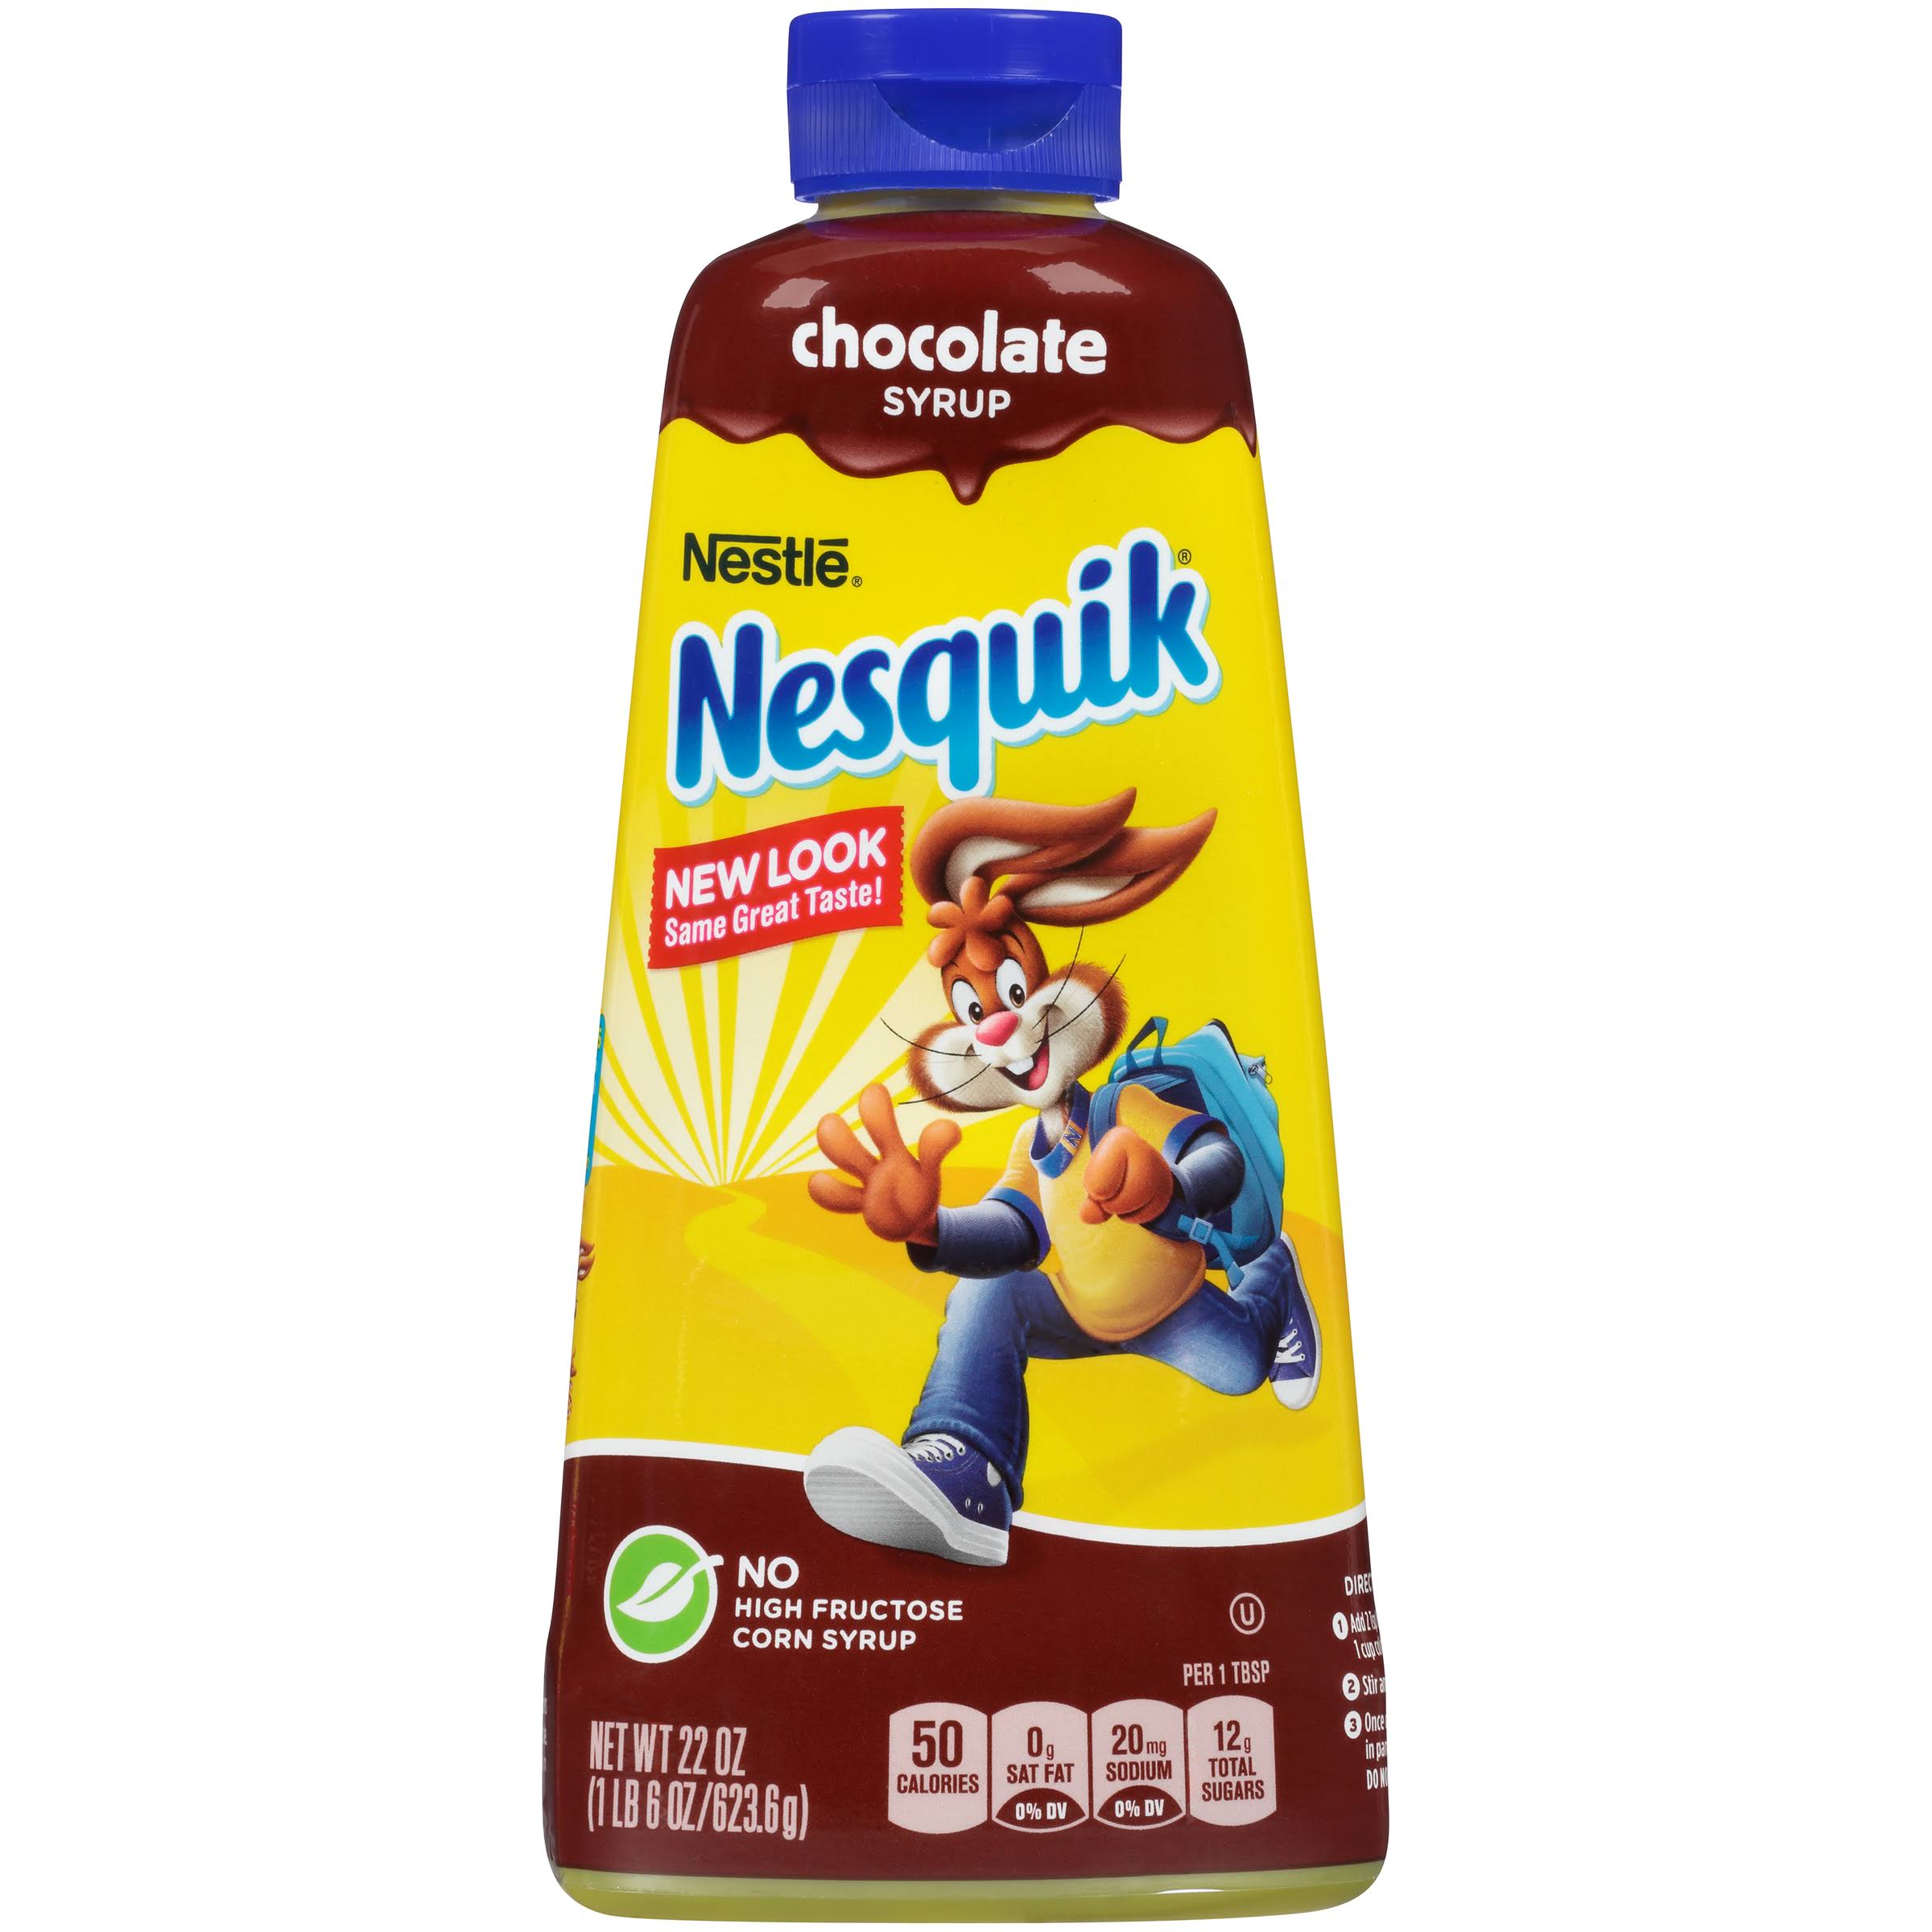 Nestlé Nesquik Chocolate Syrup - 22oz